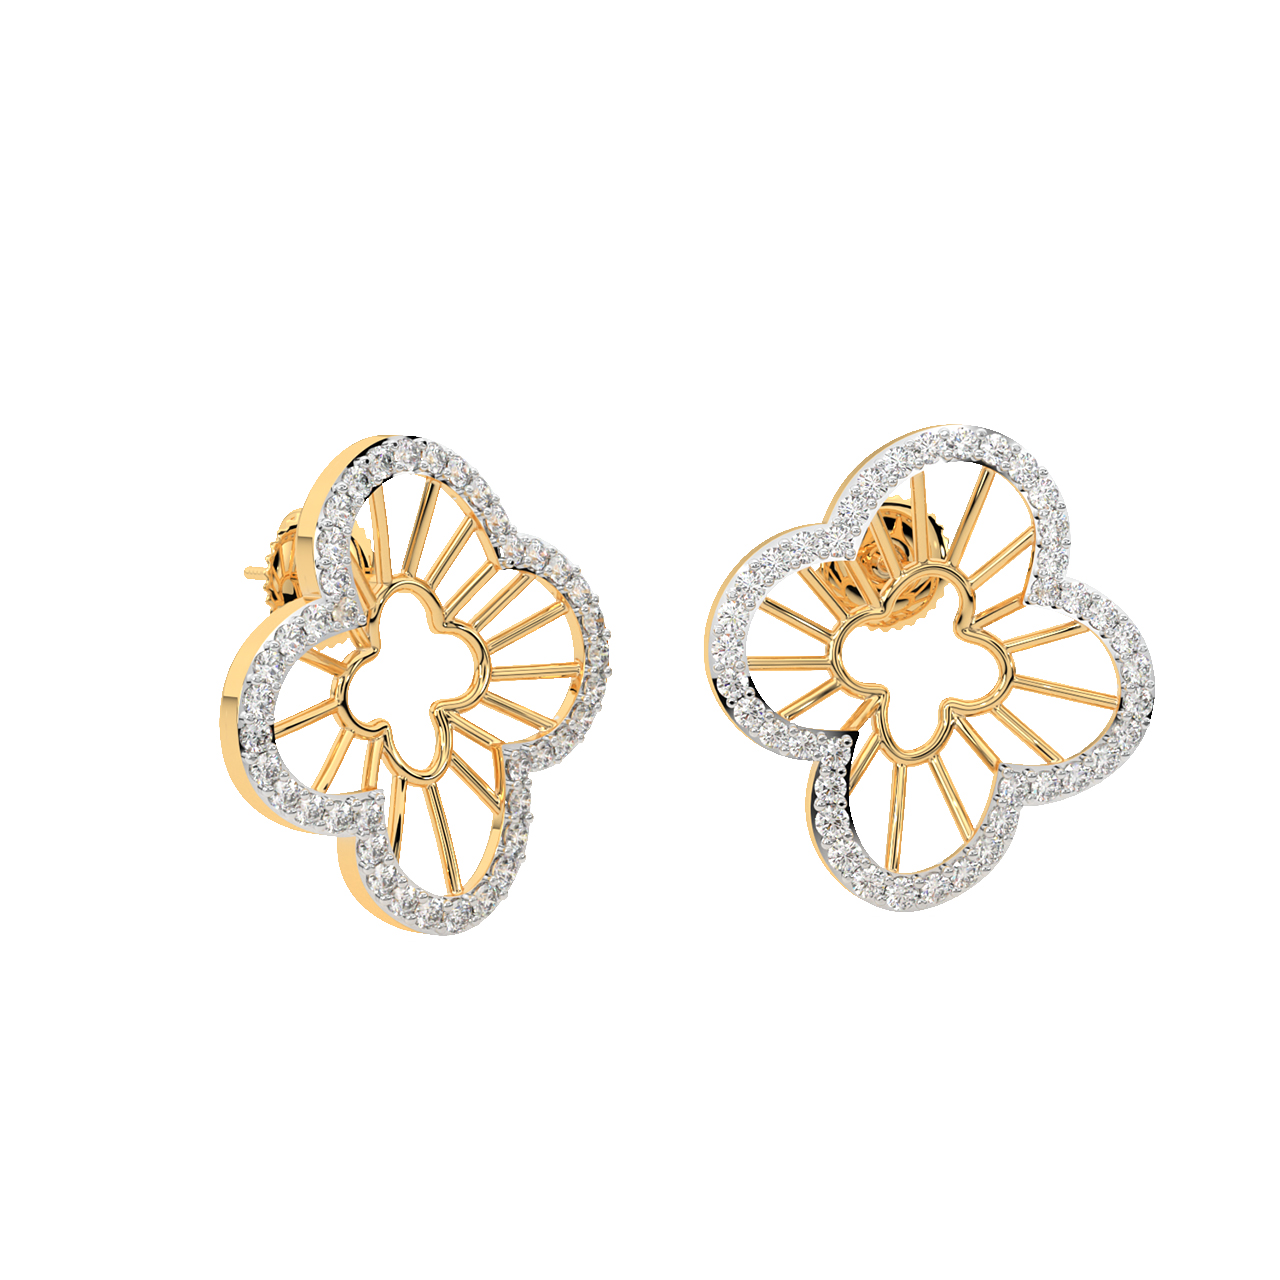 Lotus Diamond Stud Earrings